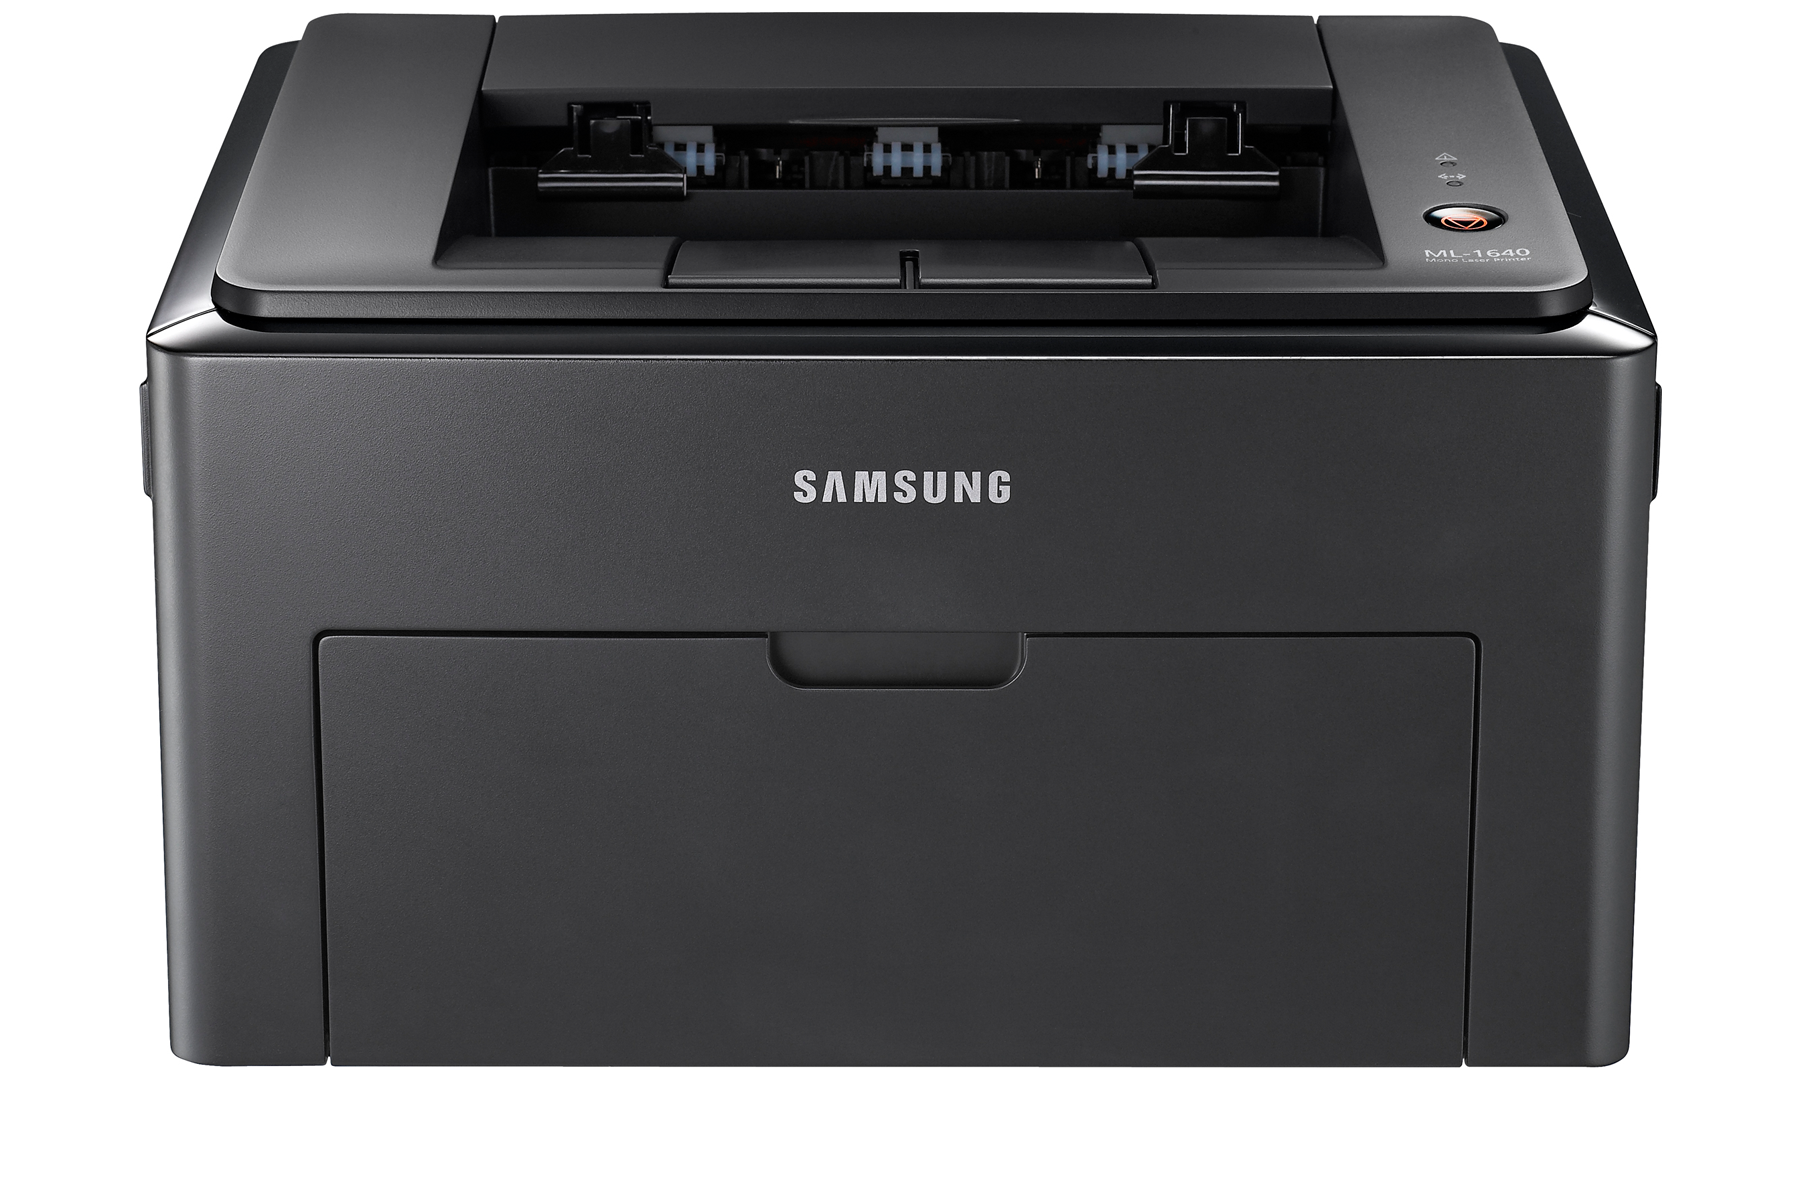 Samsung Laser Printer Ml 1640 Инструкция